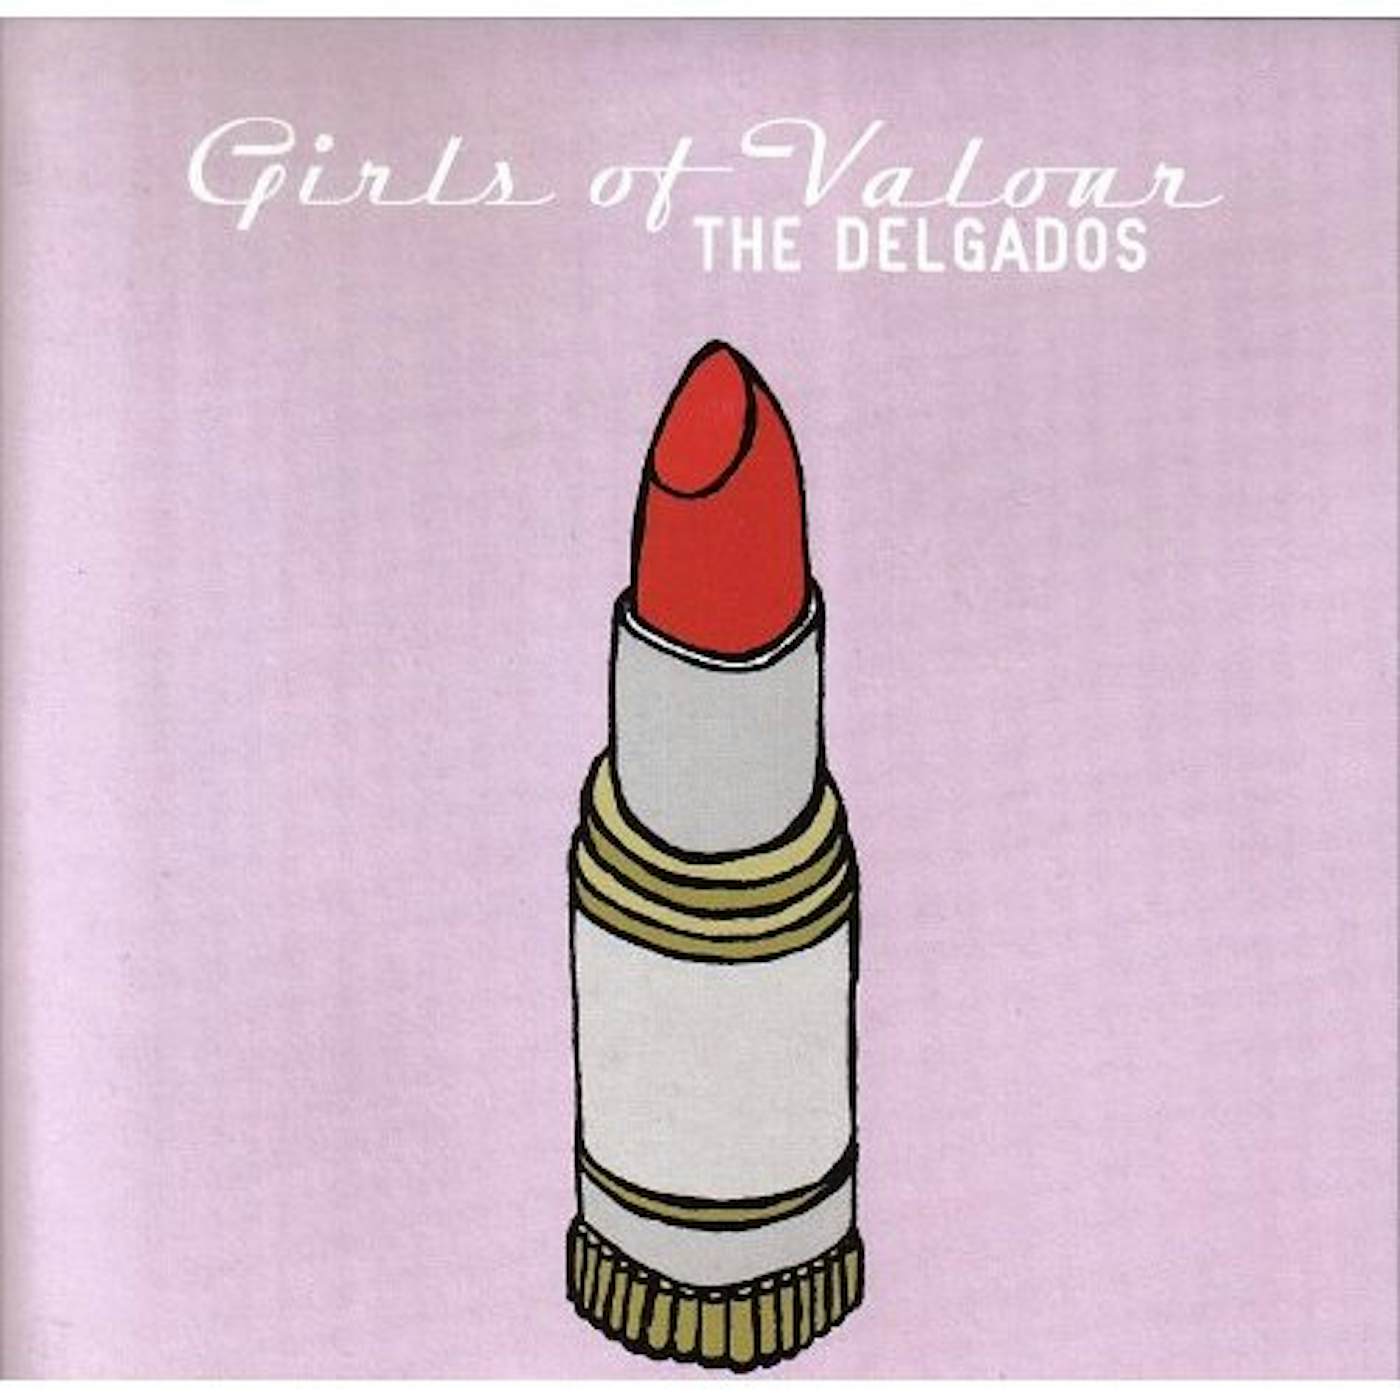 The Delgados Girls Of Valour Vinyl Record